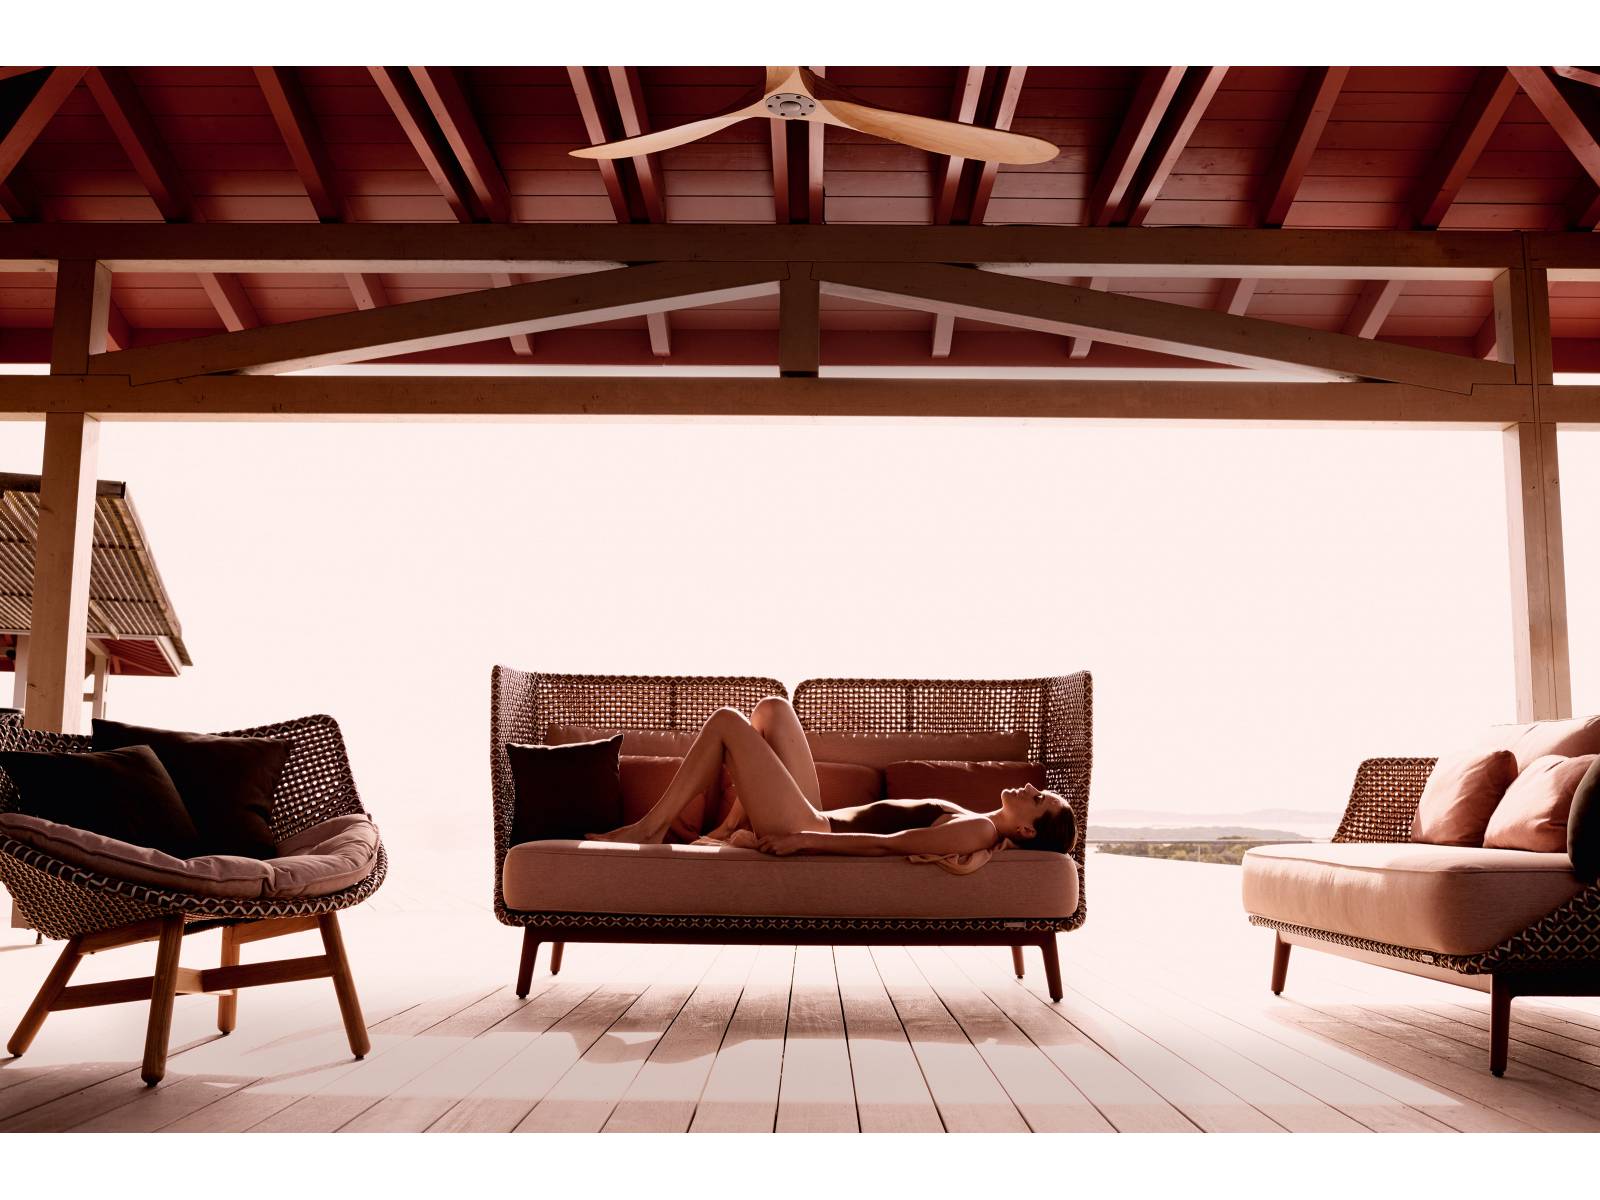 Eleganter Rückzugsort: Sebastian Herkner liess sich für sein Outdoormöbel von einem Alkoven inspirieren. «Ich sehe Mbarq auch als Treffpunkt und Arbeitsplatz», sagt der Designer über seinen Entwurf. Die modulare Sitzmöbel-Kollektion gibt es mit unterschiedlich hohen Rückenlehnen. Dedon.